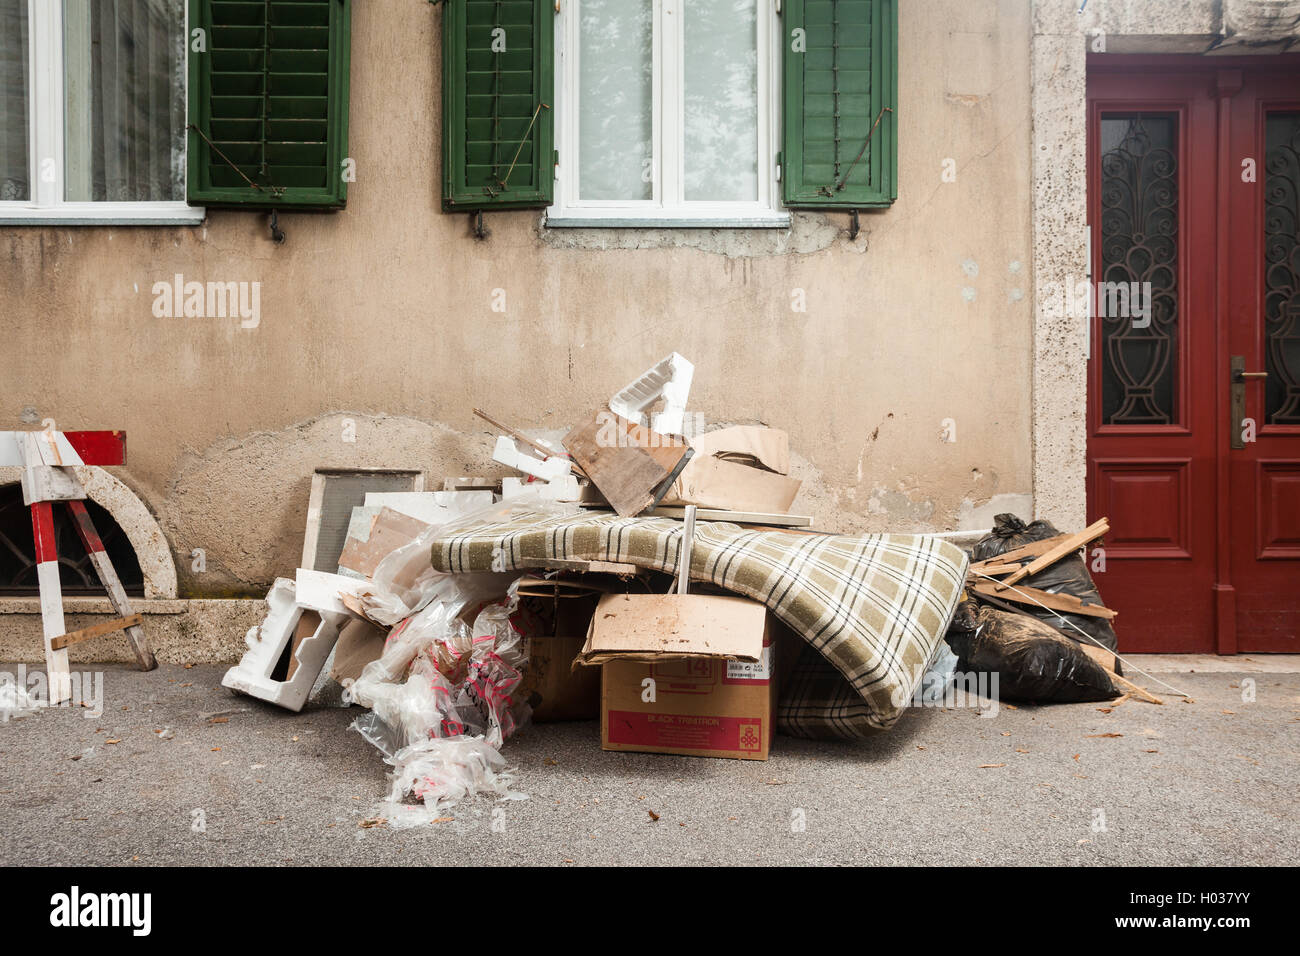 Zagabria, Croazia - 14 ottobre 2013: discarica di rifiuti collocati nella parte anteriore della casa. Foto Stock